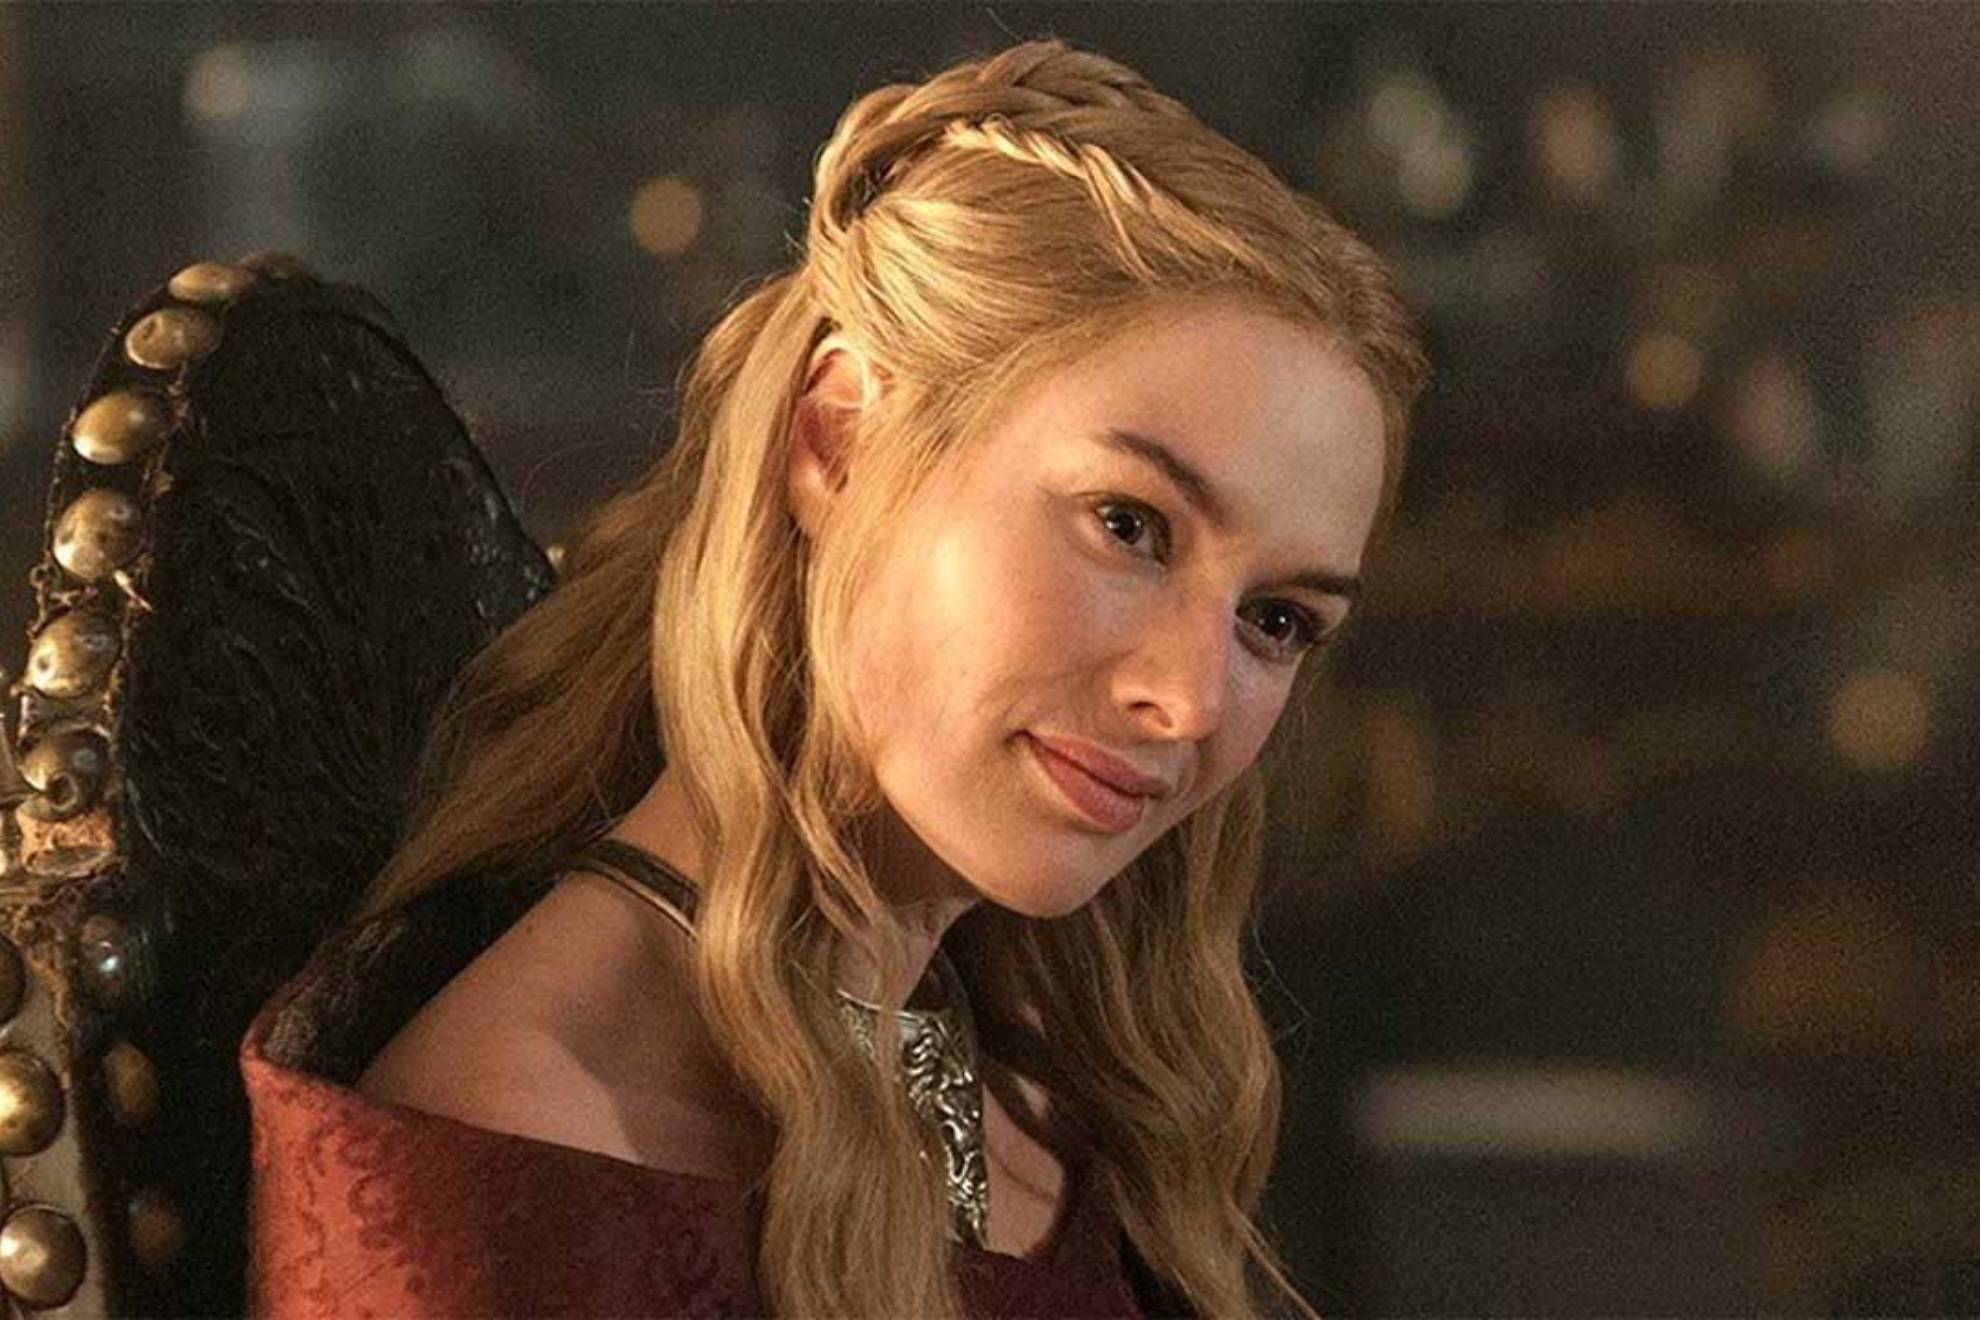 Lena Headey in character in Game of Thrones